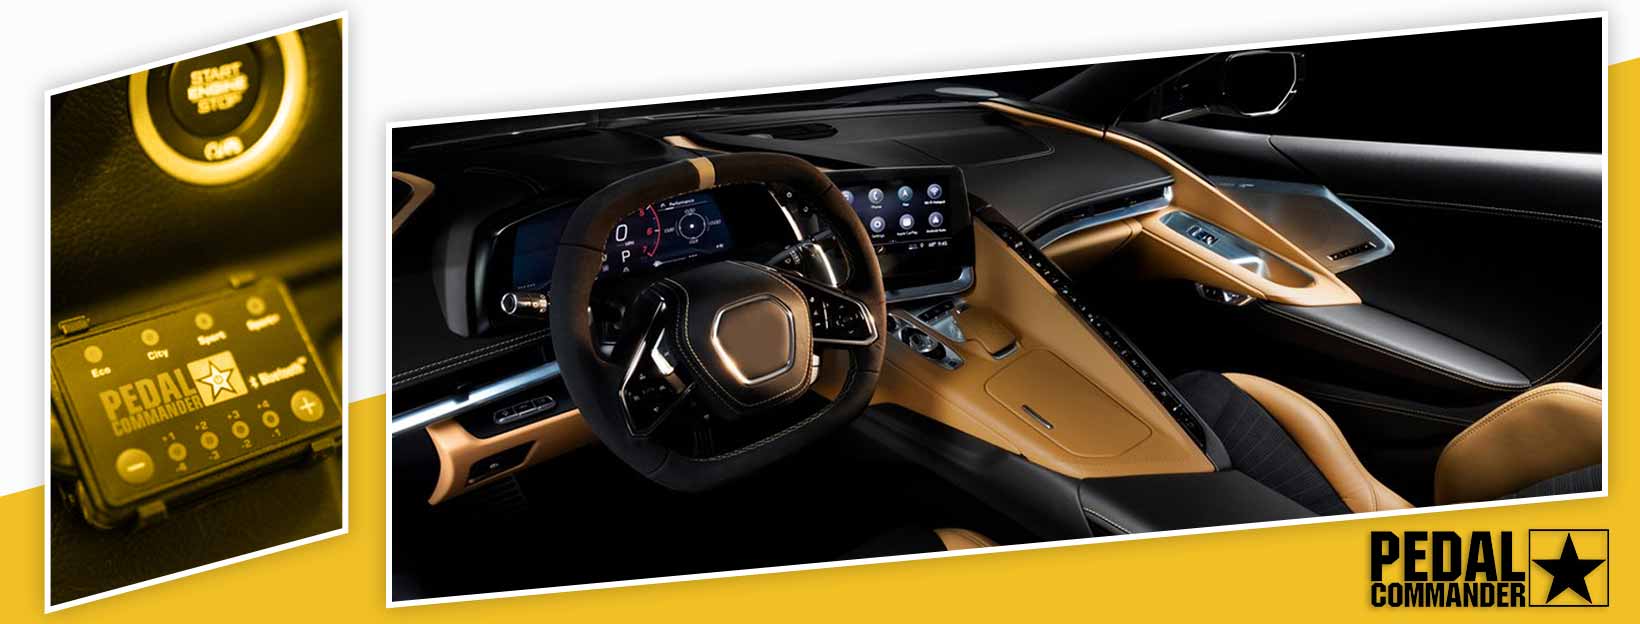 Pedal Commander for Chevrolet Corvette - interior